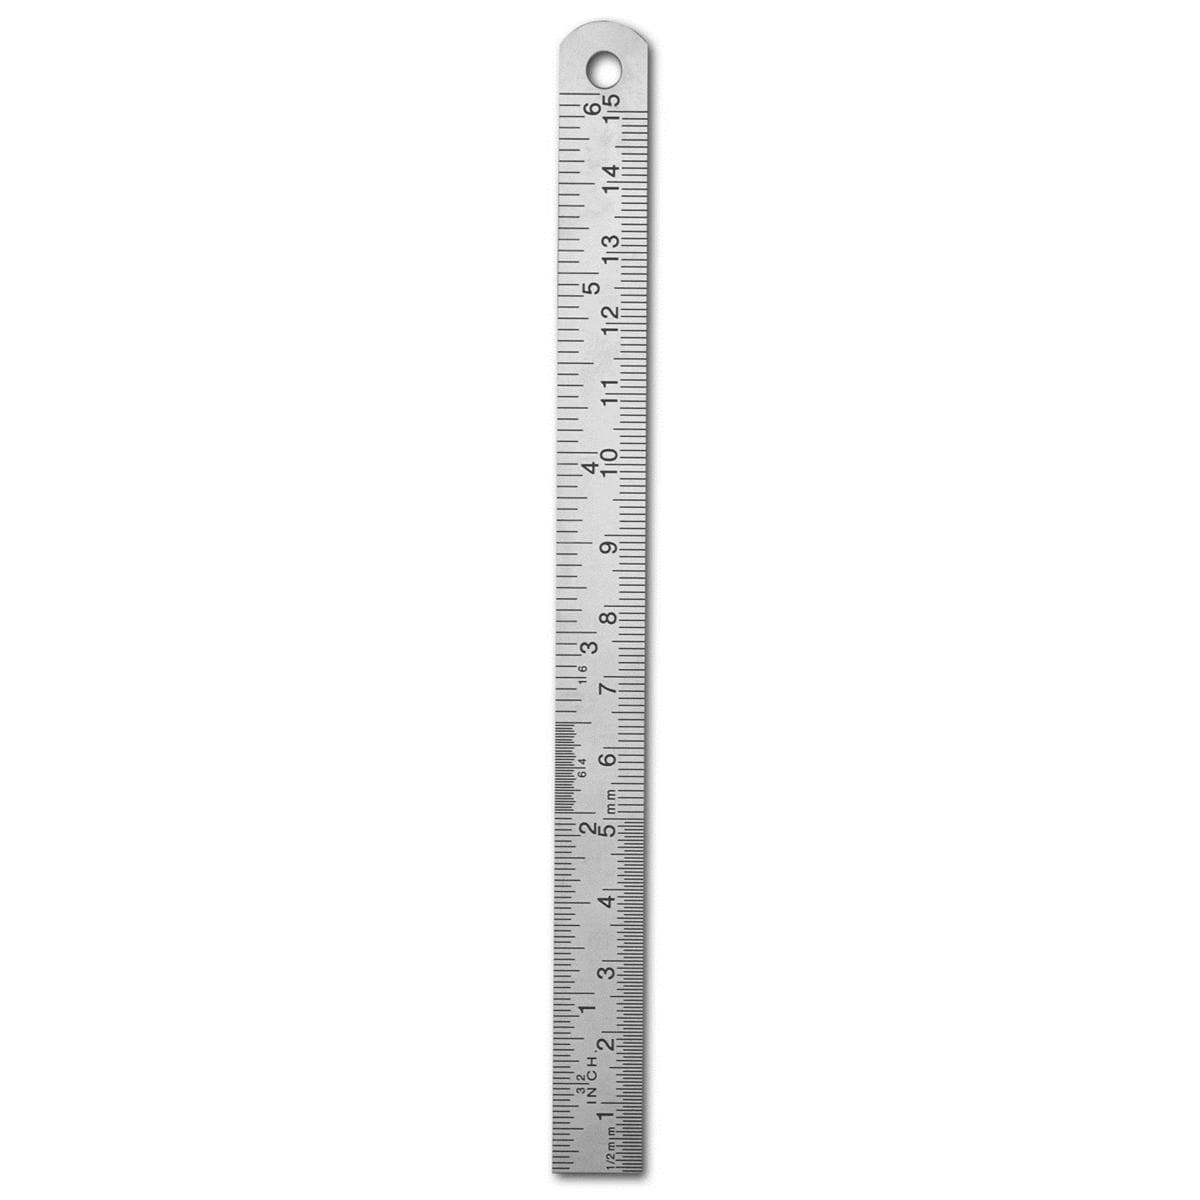 Lineaal metaal - REF. 1597, 15 cm